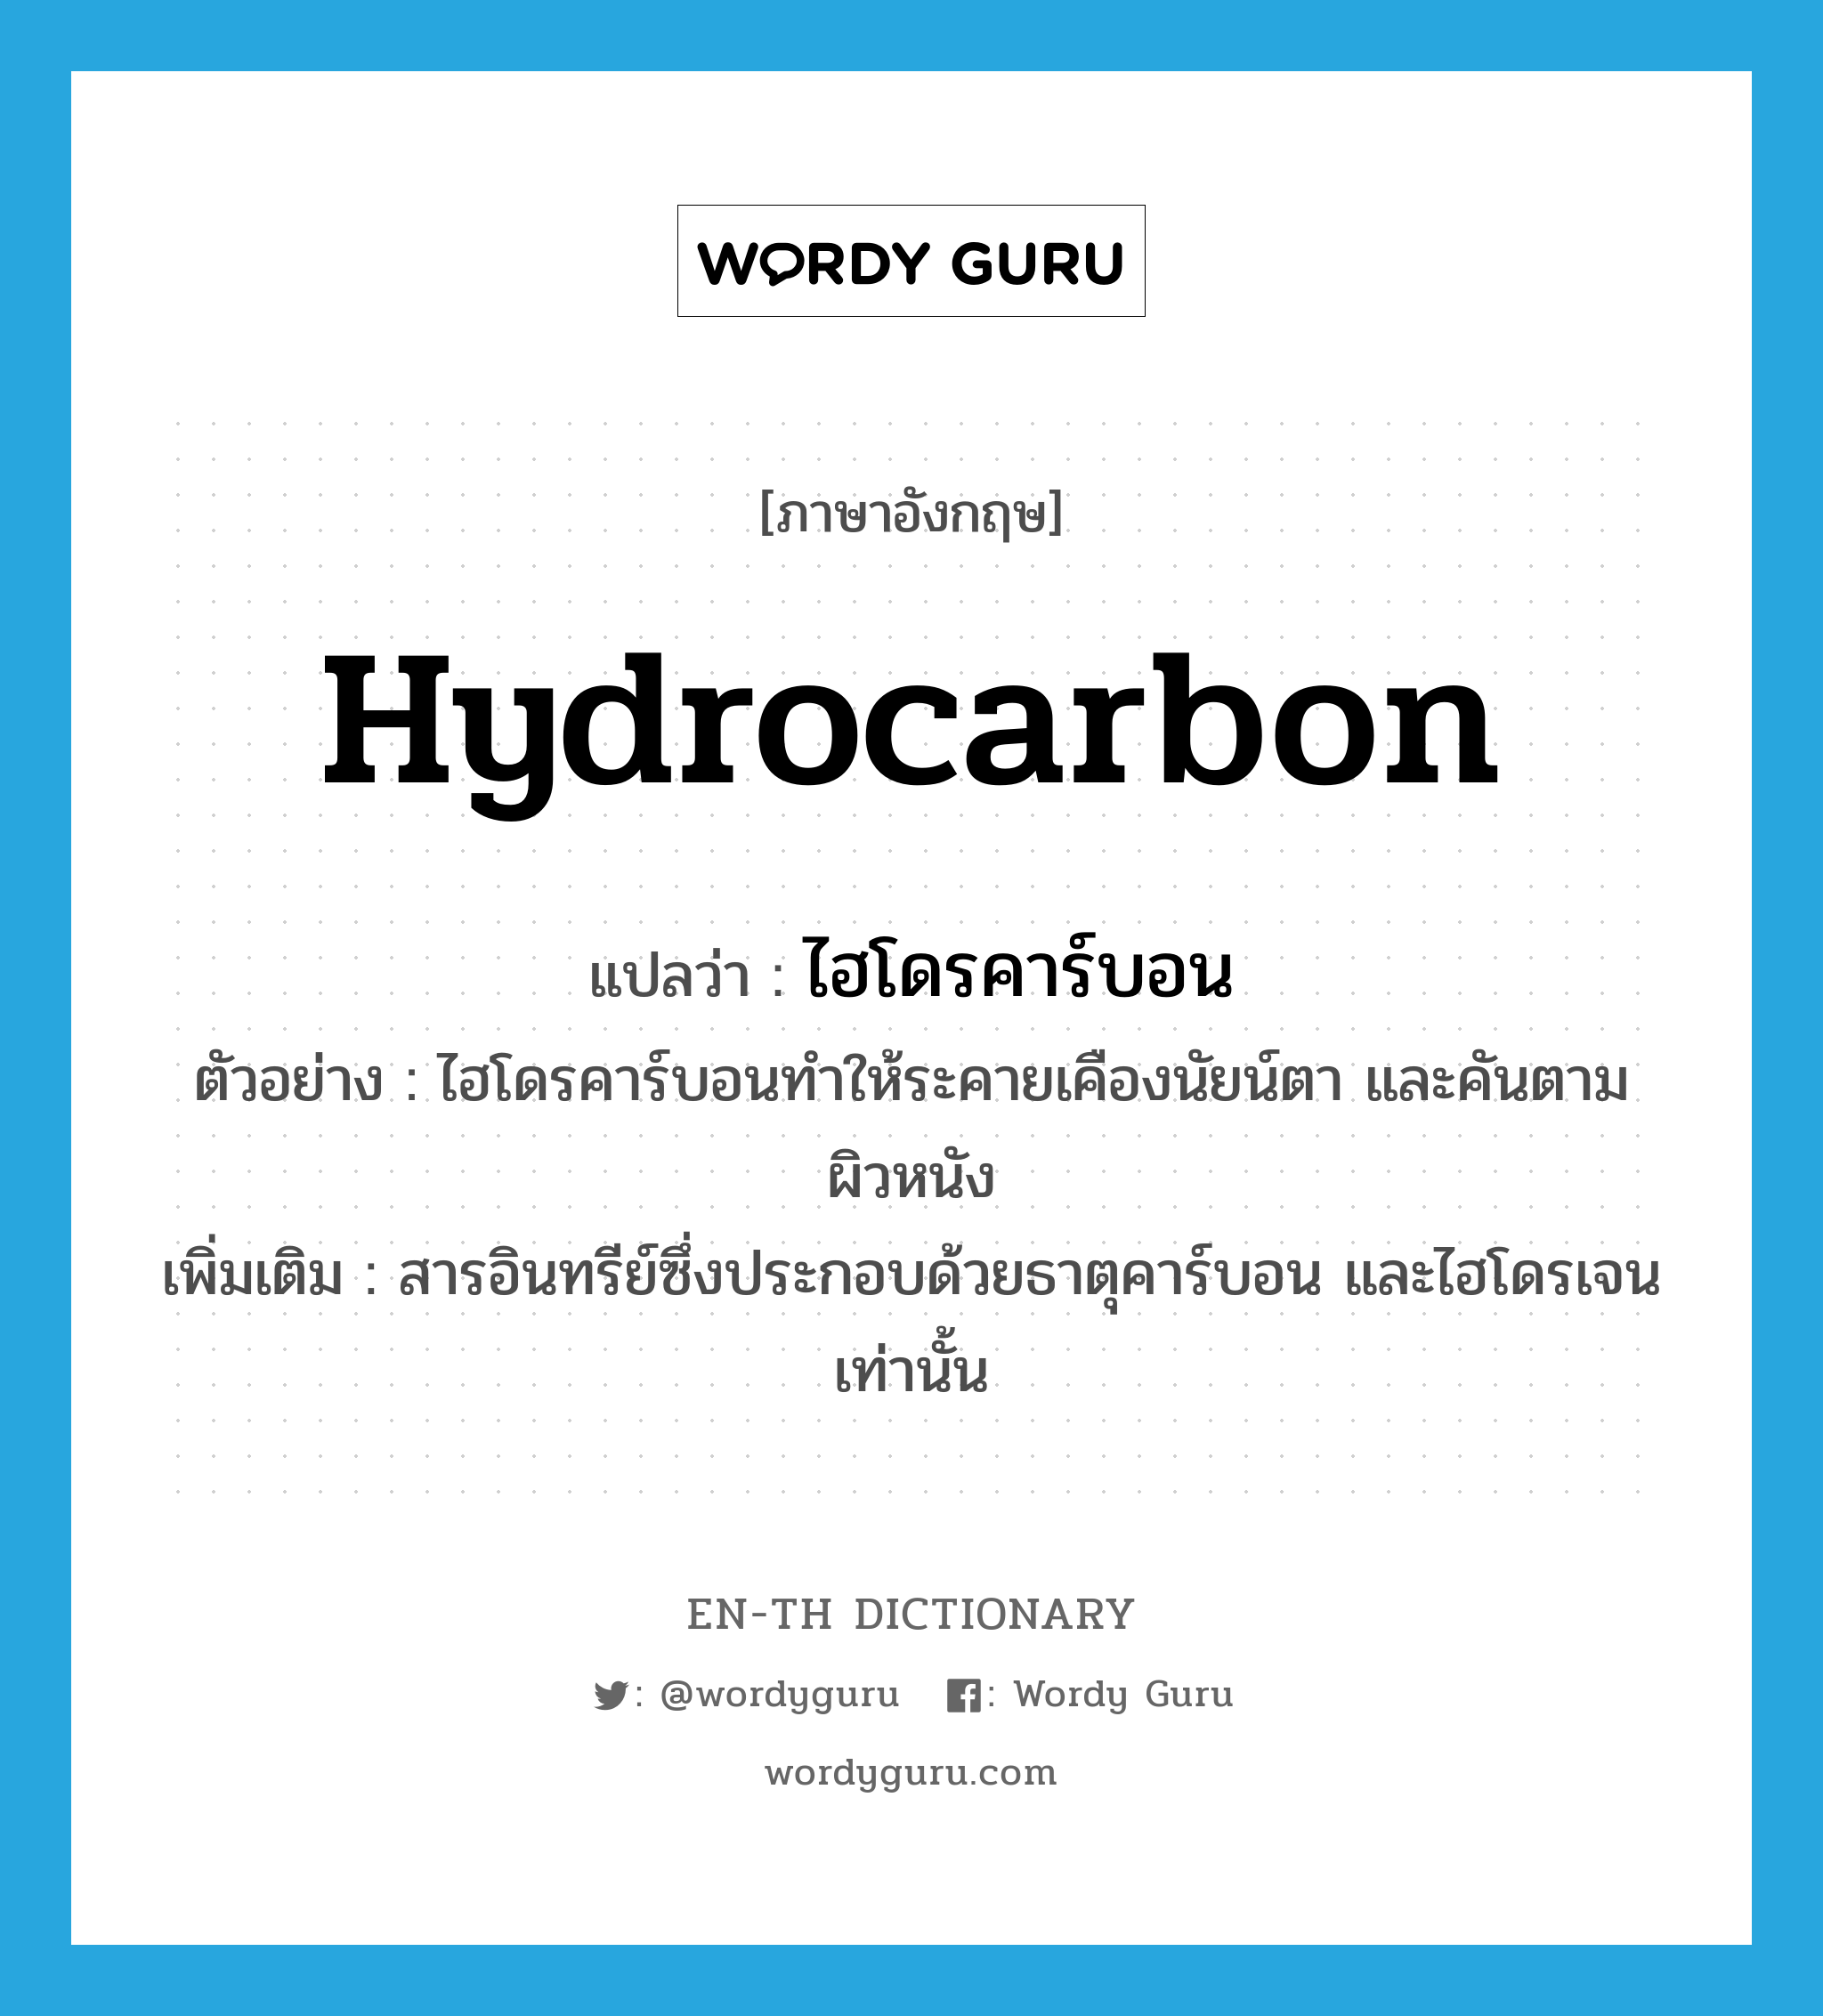 ไฮโดรคาร์บอน ภาษาอังกฤษ?, คำศัพท์ภาษาอังกฤษ ไฮโดรคาร์บอน แปลว่า hydrocarbon ประเภท N ตัวอย่าง ไฮโดรคาร์บอนทำให้ระคายเคืองนัยน์ตา และคันตามผิวหนัง เพิ่มเติม สารอินทรีย์ซึ่งประกอบด้วยธาตุคาร์บอน และไฮโดรเจนเท่านั้น หมวด N